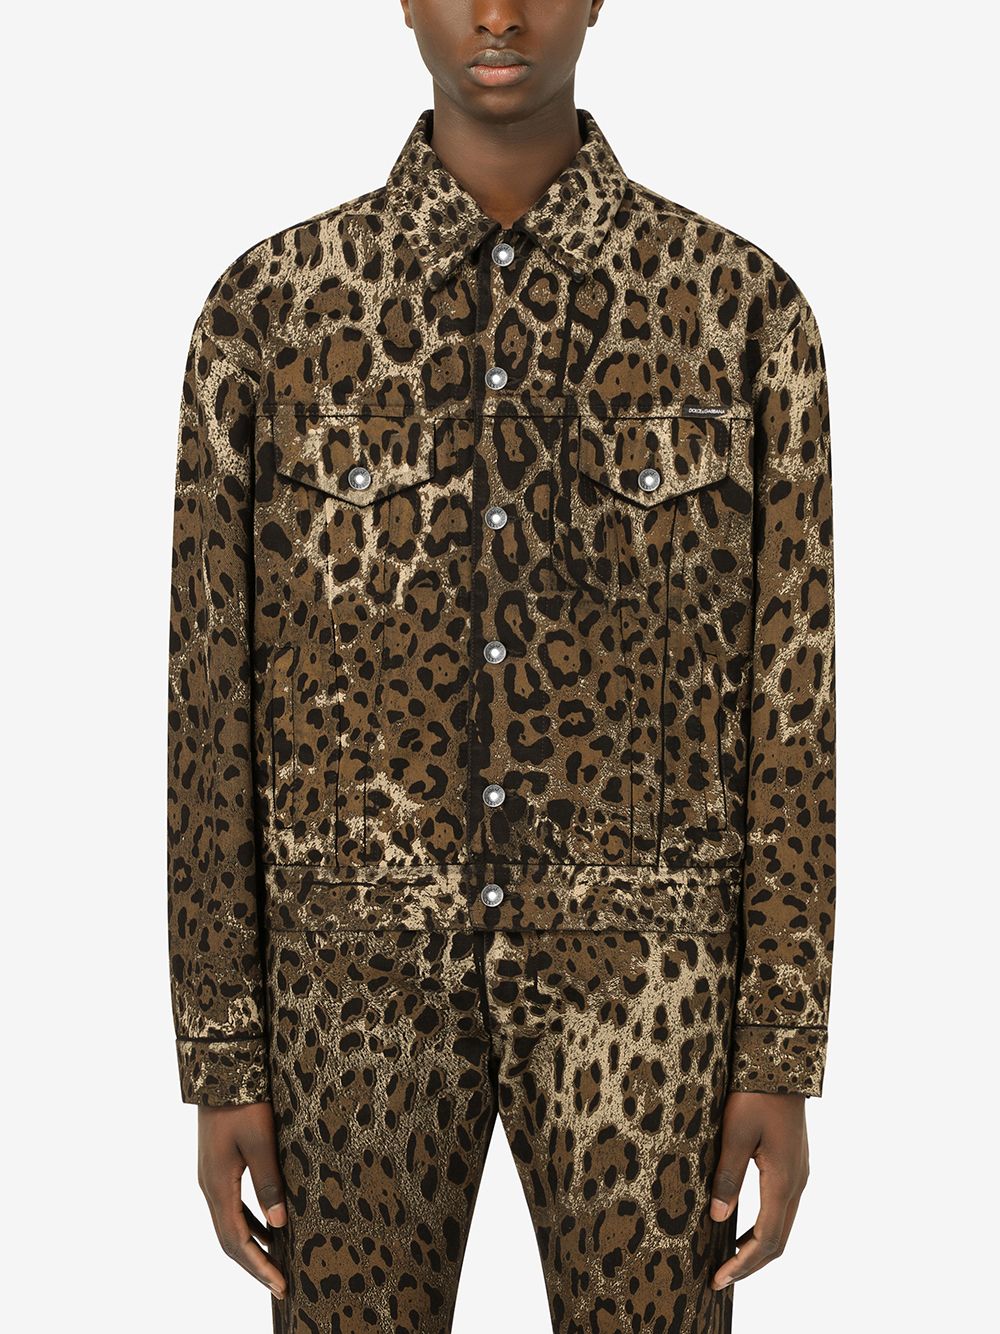 фото Dolce & gabbana джинсовая куртка с леопардовым принтом